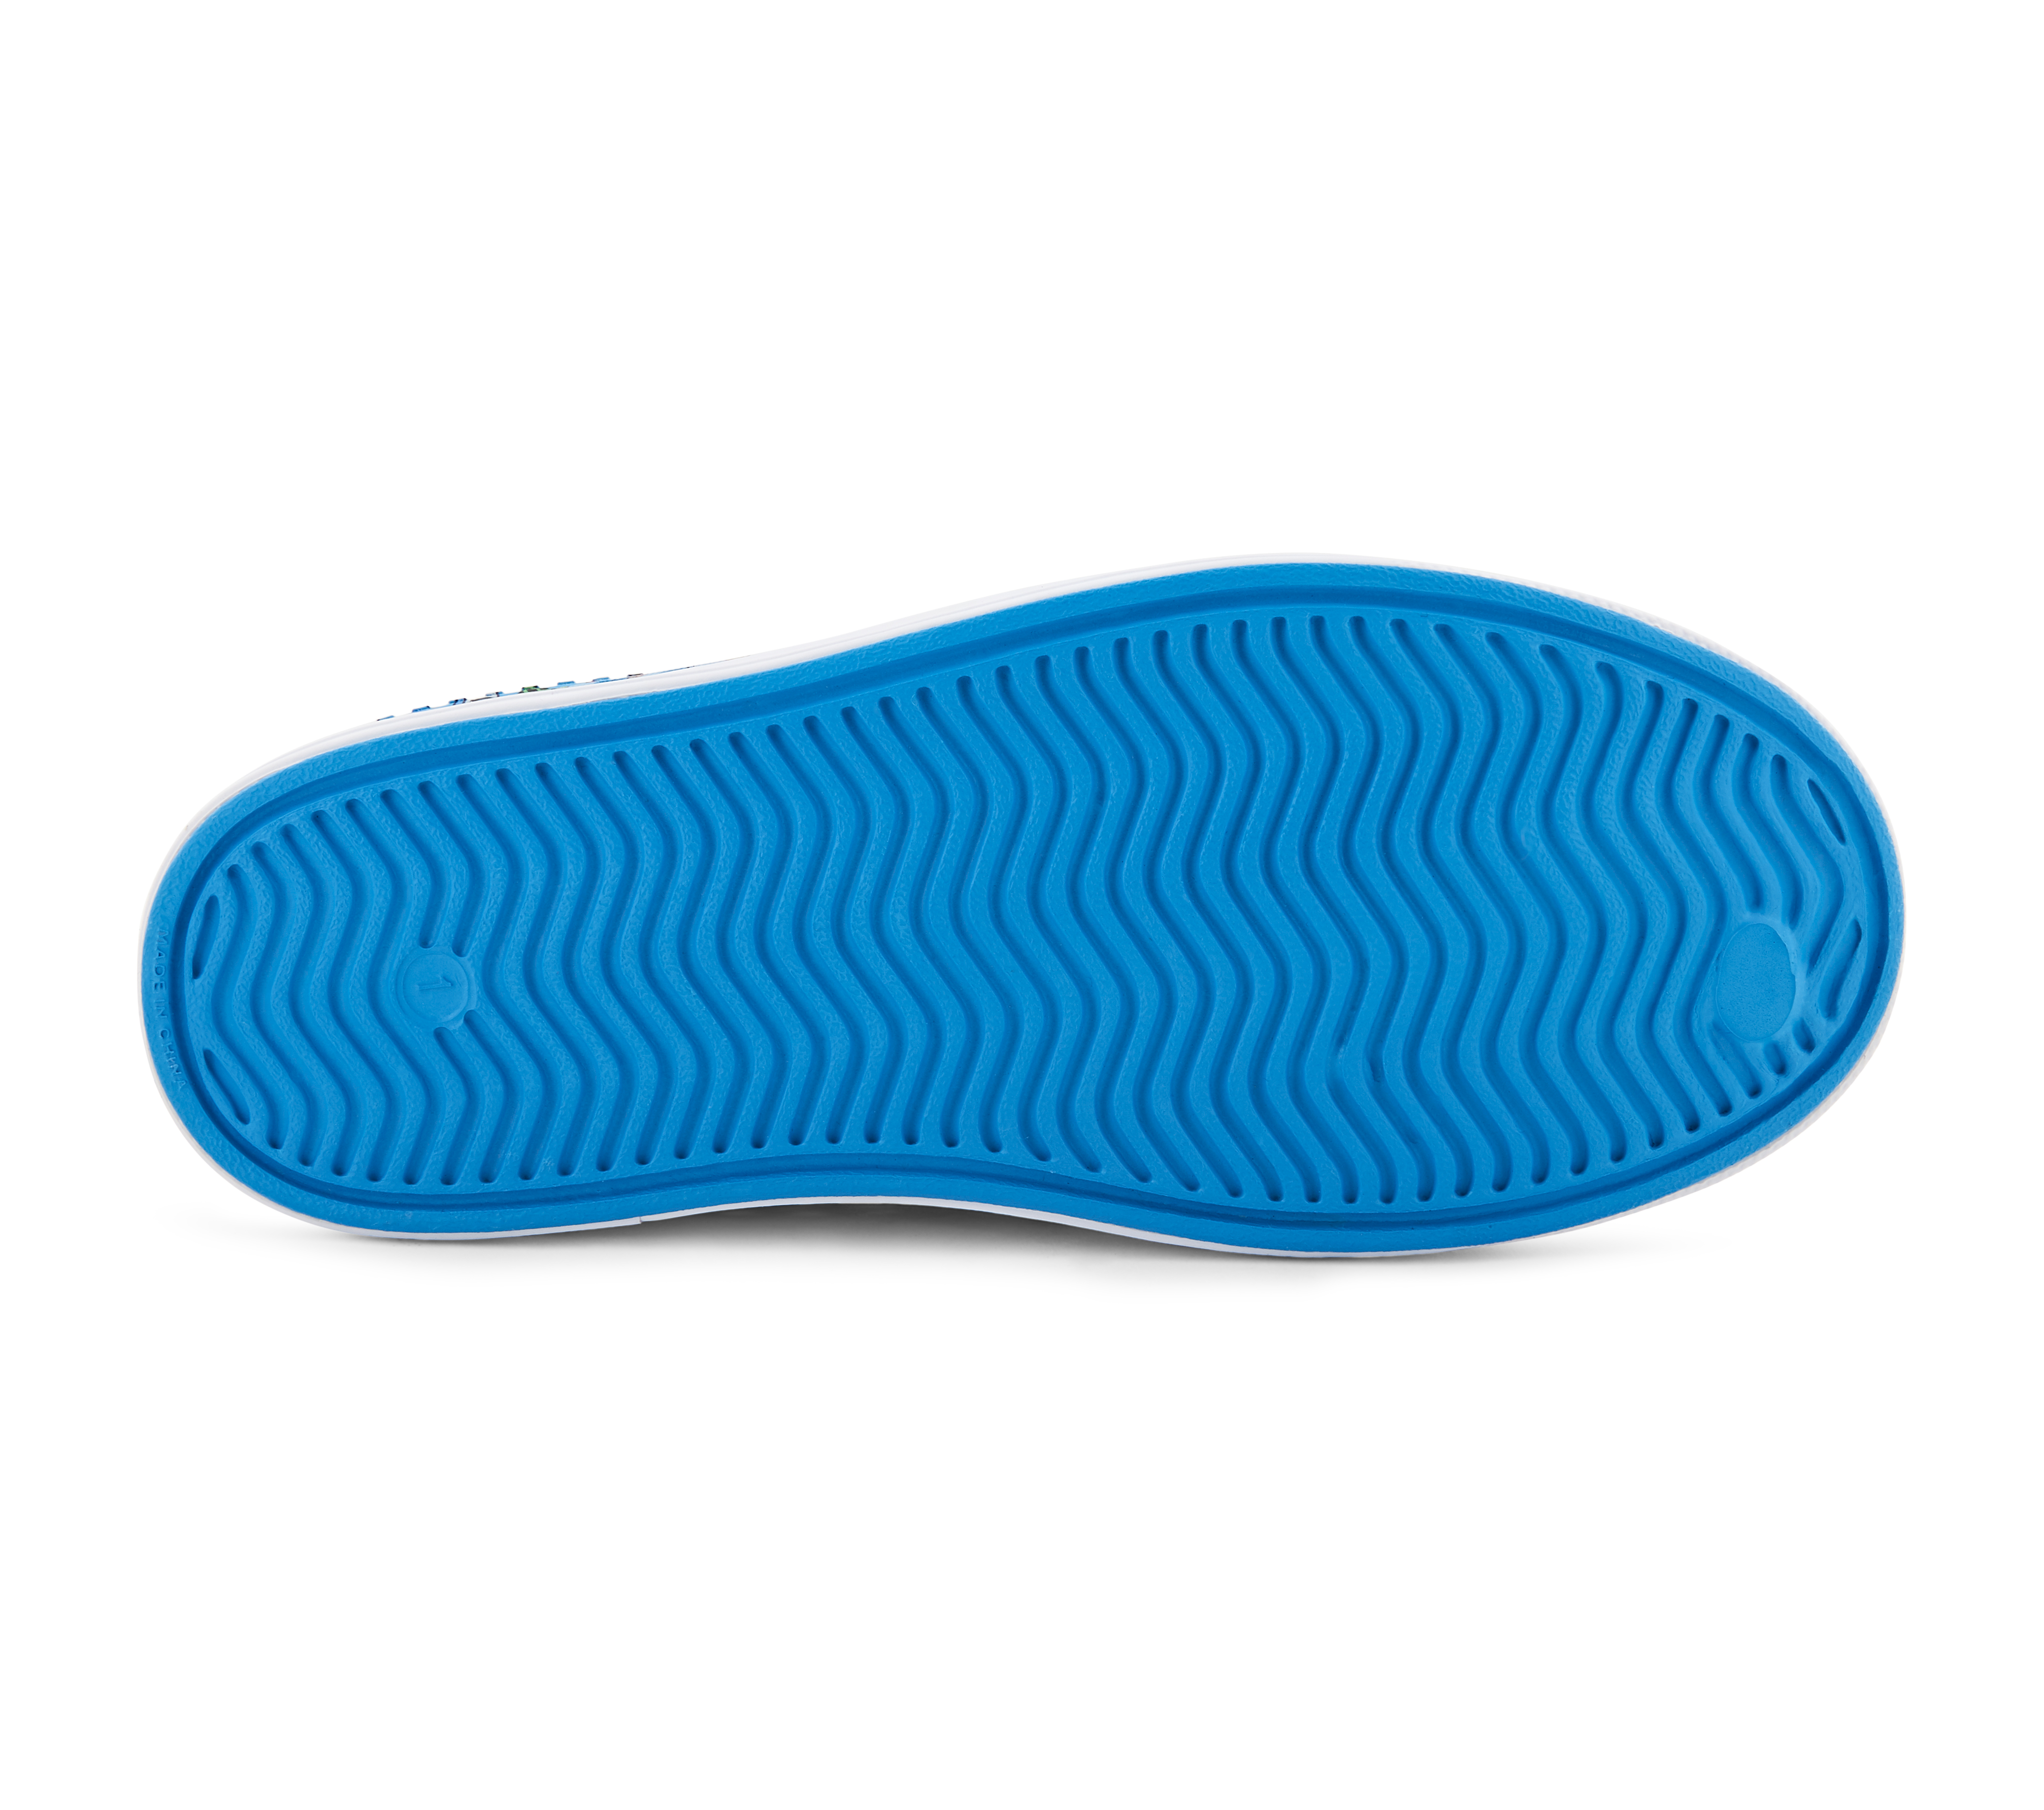 GUZMAN STEPS - CLAWS & PAWS, BLUE/MULTI Footwear Bottom View